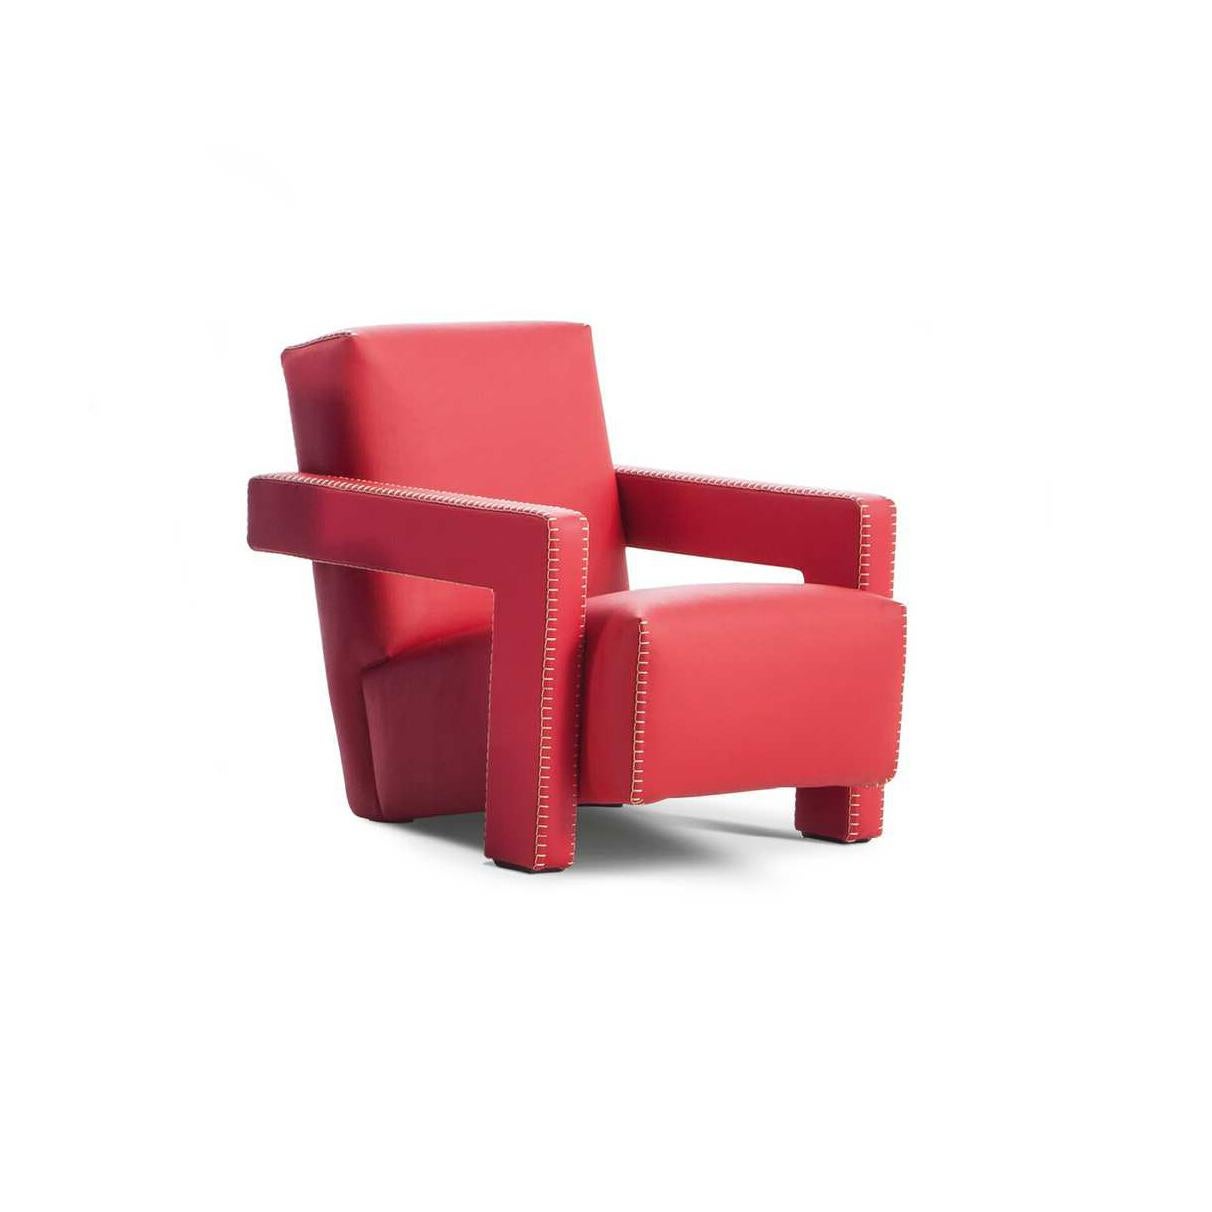 Sessel, entworfen von Gerrit Thomas Rietveld im Jahr 1935. Neu aufgelegt im Jahr 2015.

Baby-Version.

Hergestellt von Cassina in Italien.

Gerrit T. Rietveld entwickelte den Entwurf für den Utrecht-Sessel 1935, als er für das Kaufhaus Metz &